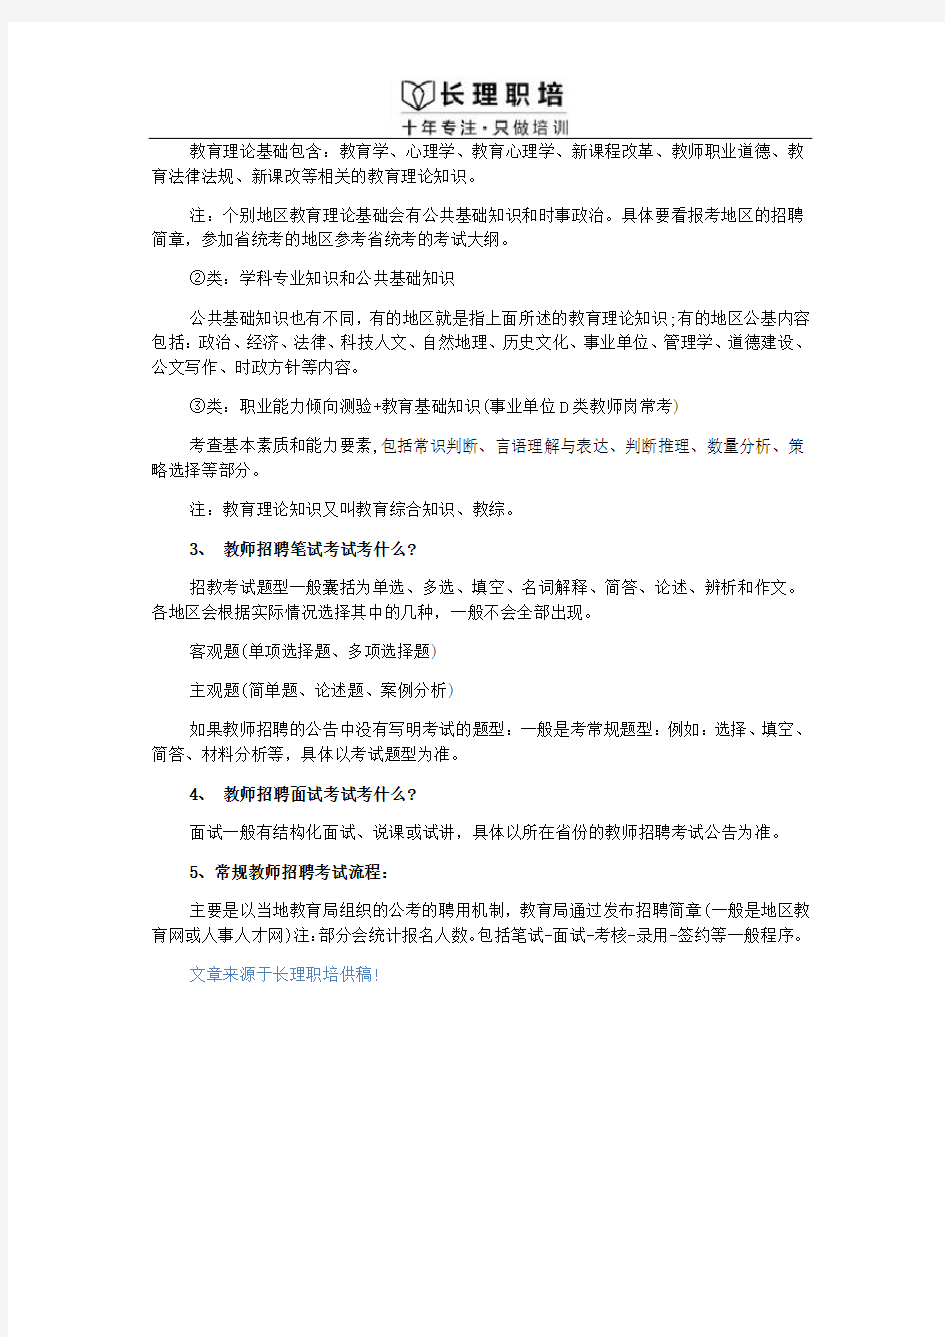 2018湖南邵阳教师招聘考试教学知识点(132)